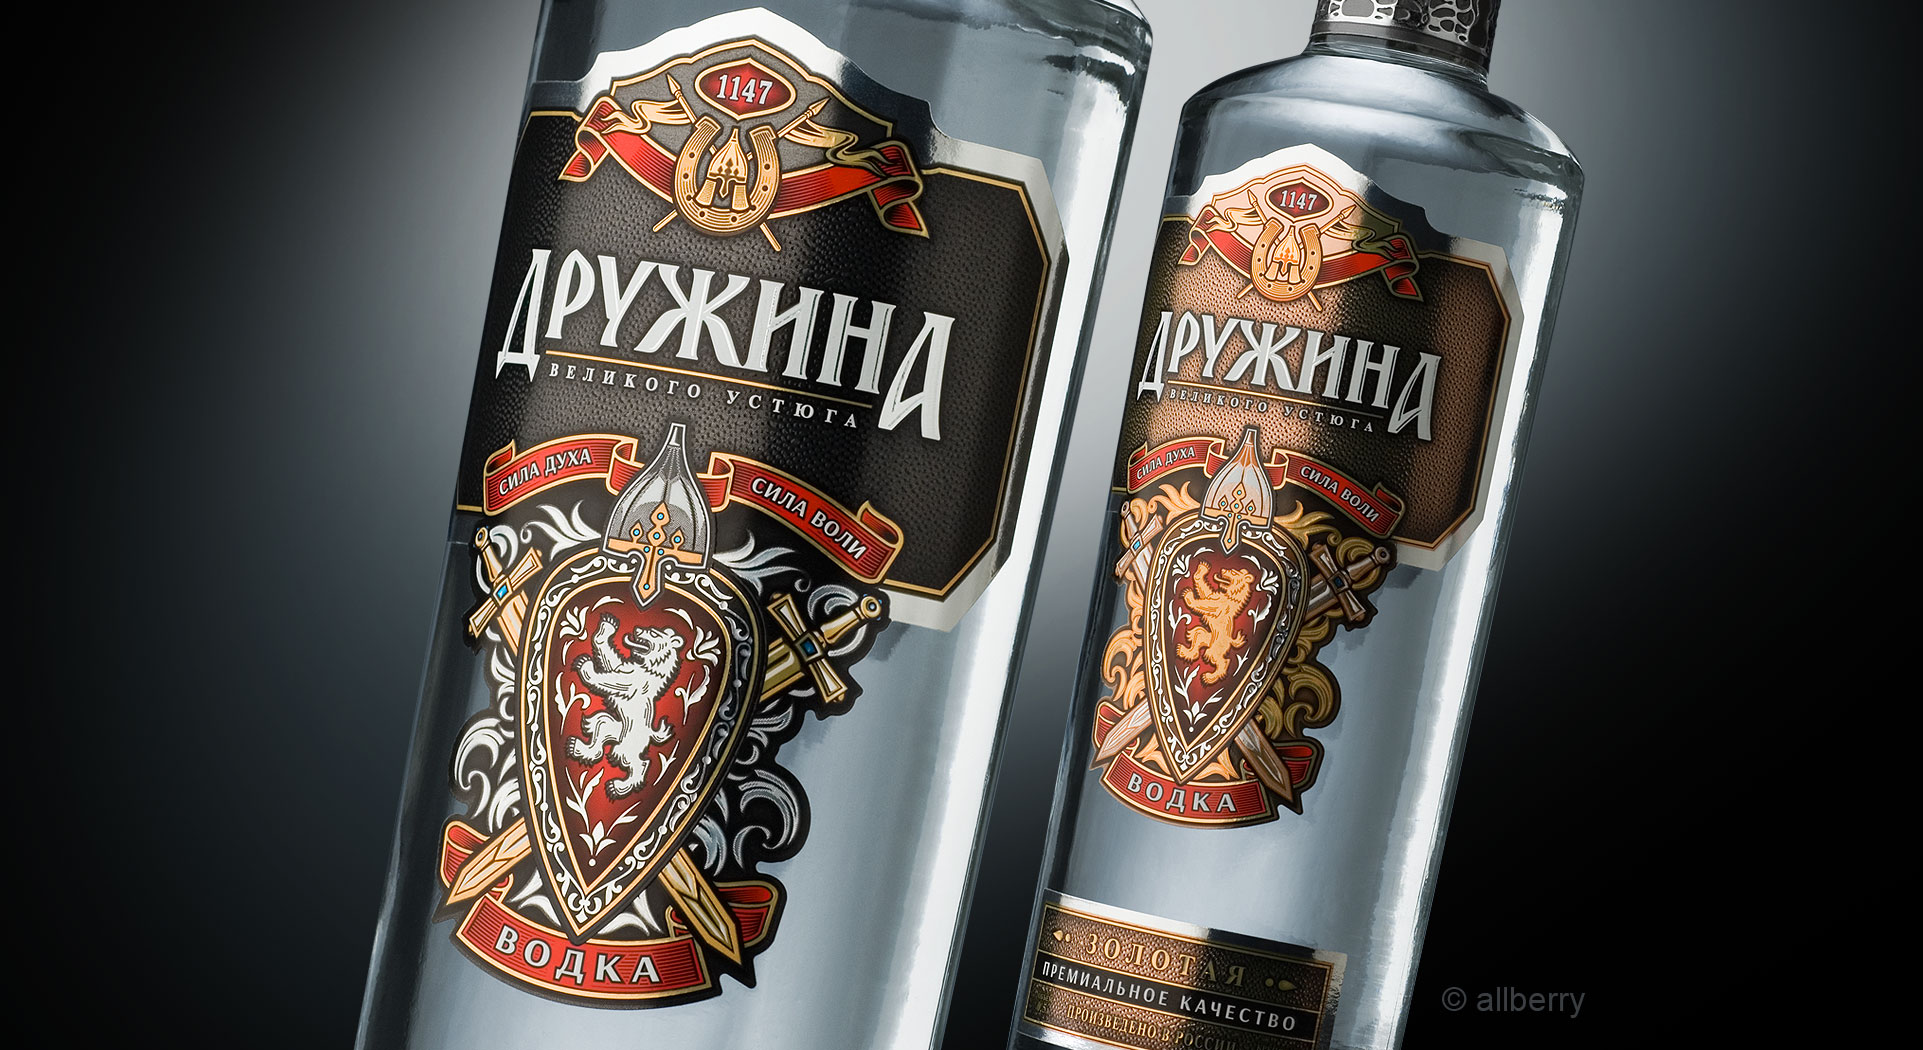 DRUZHINA vodka range design